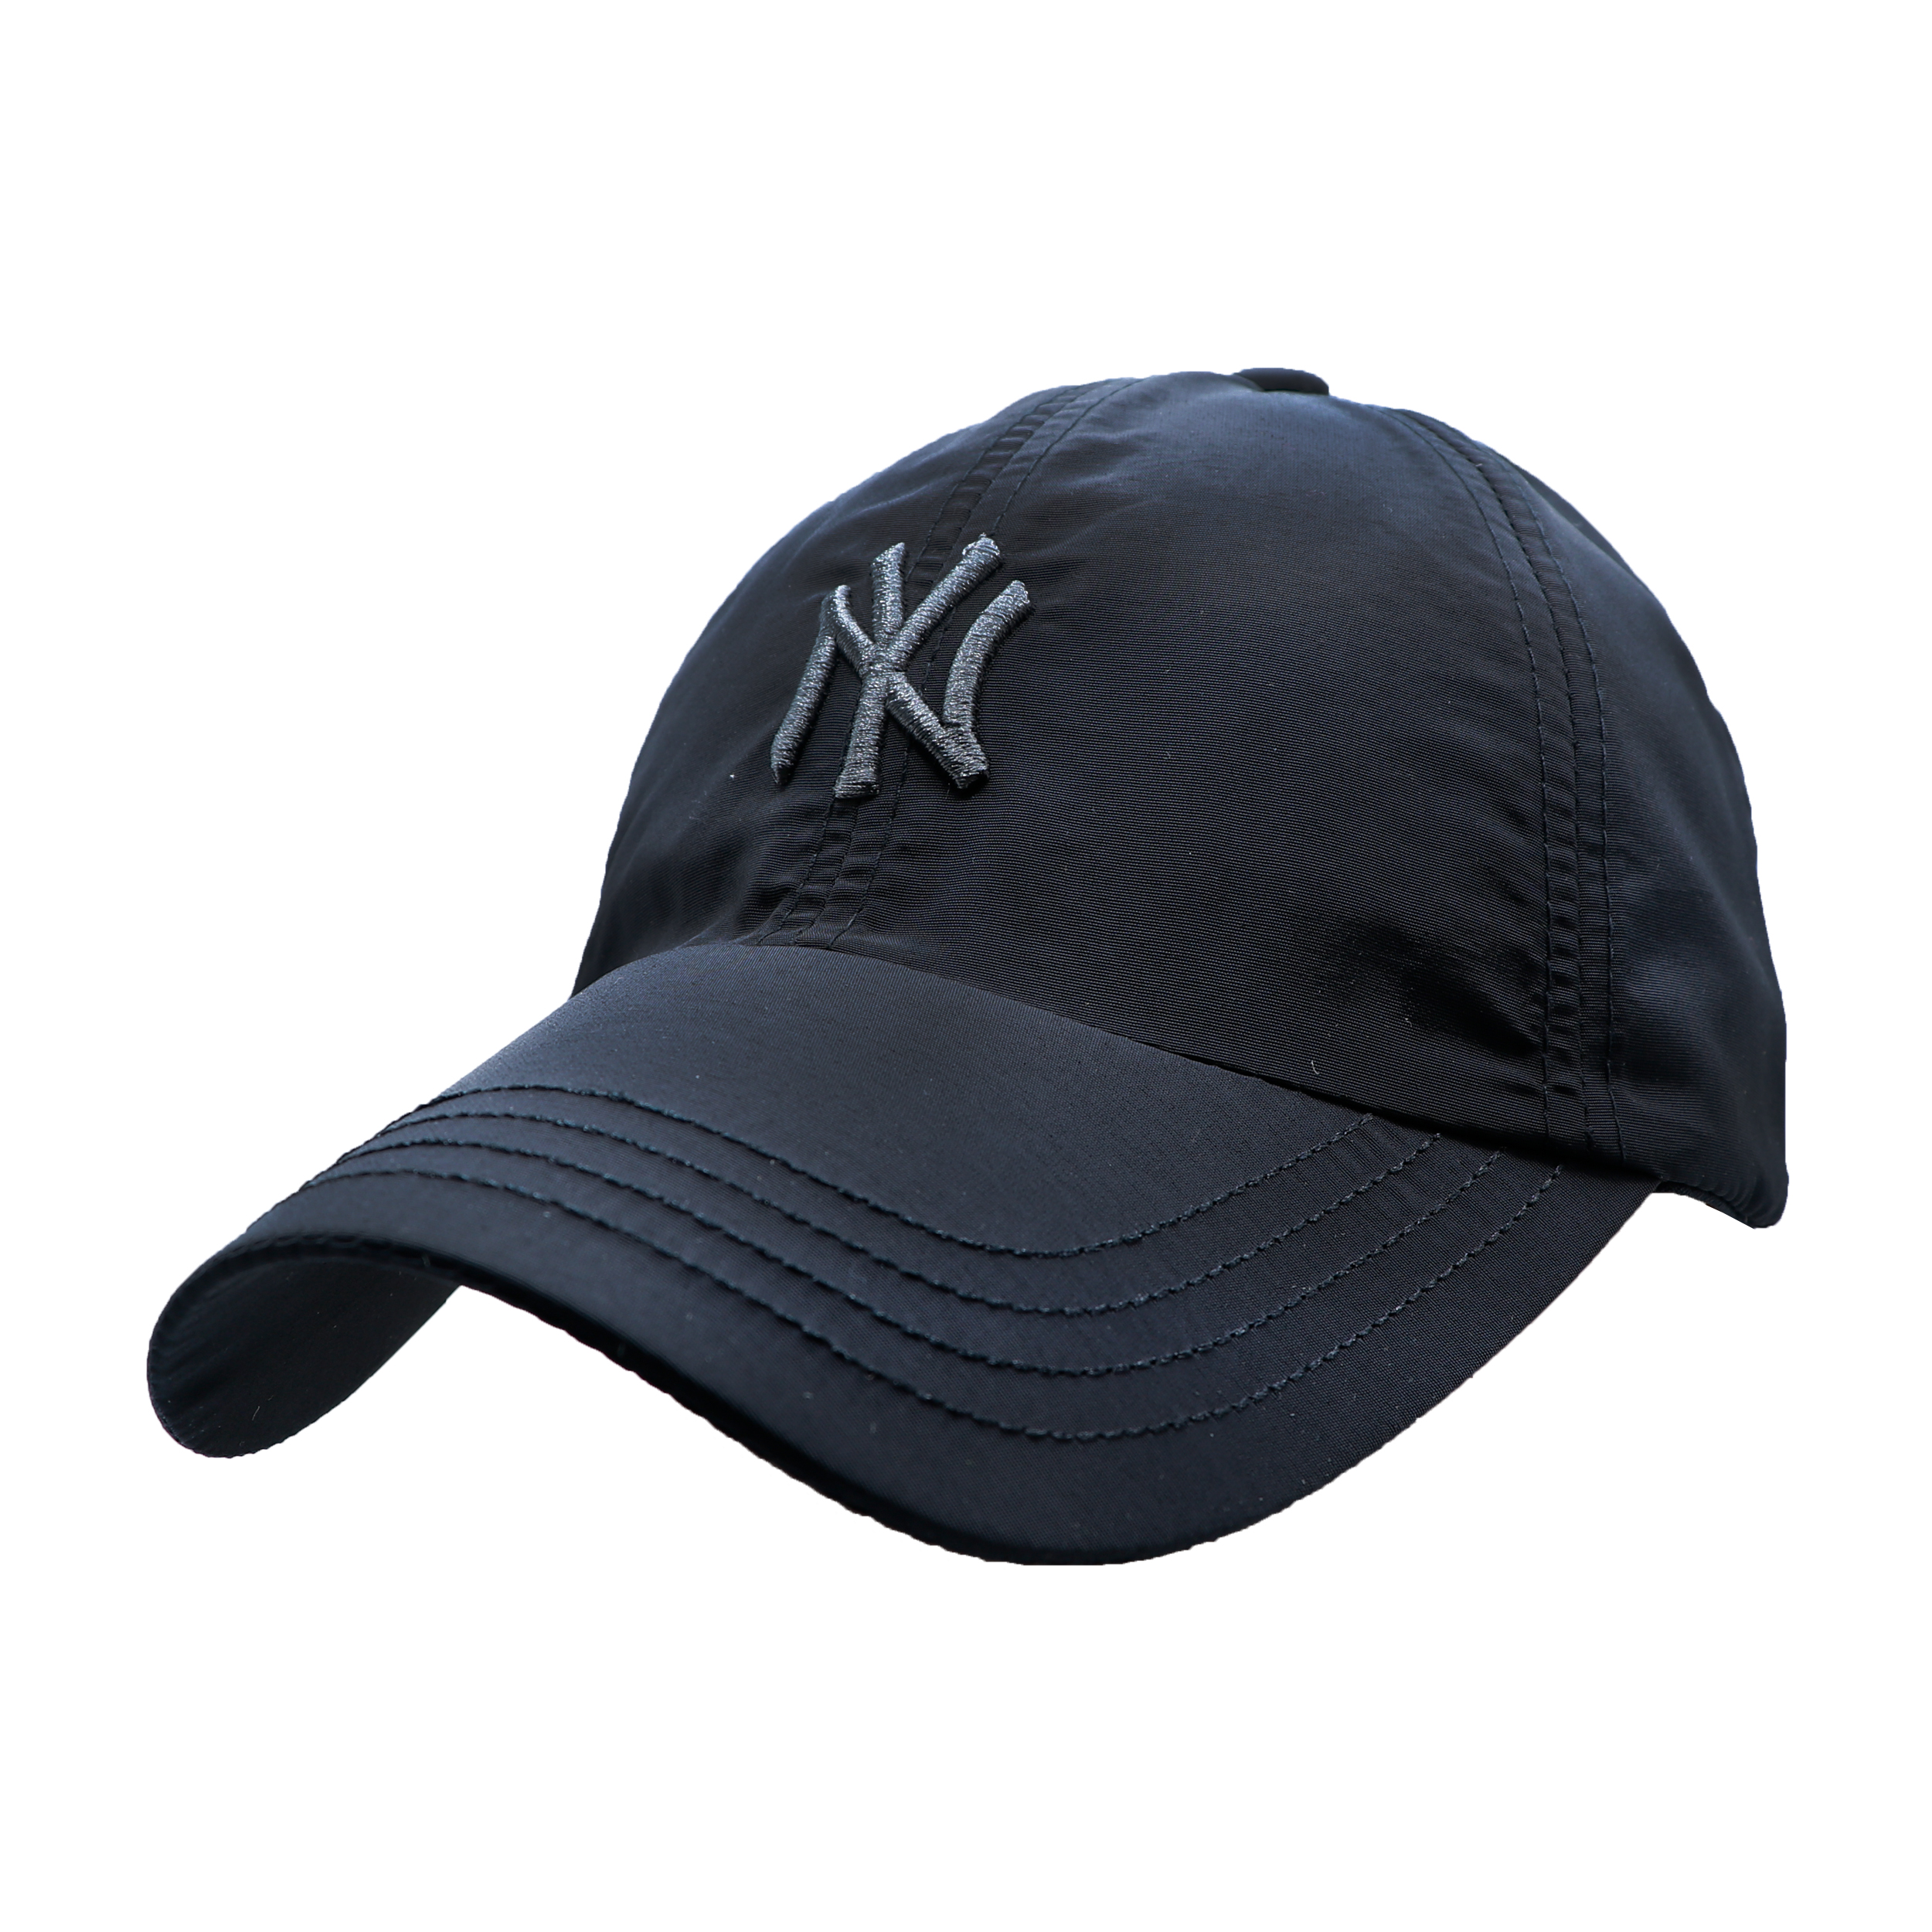 نکته خرید - قیمت روز کلاه کپ مدل TAS-NY کد 51528 خرید